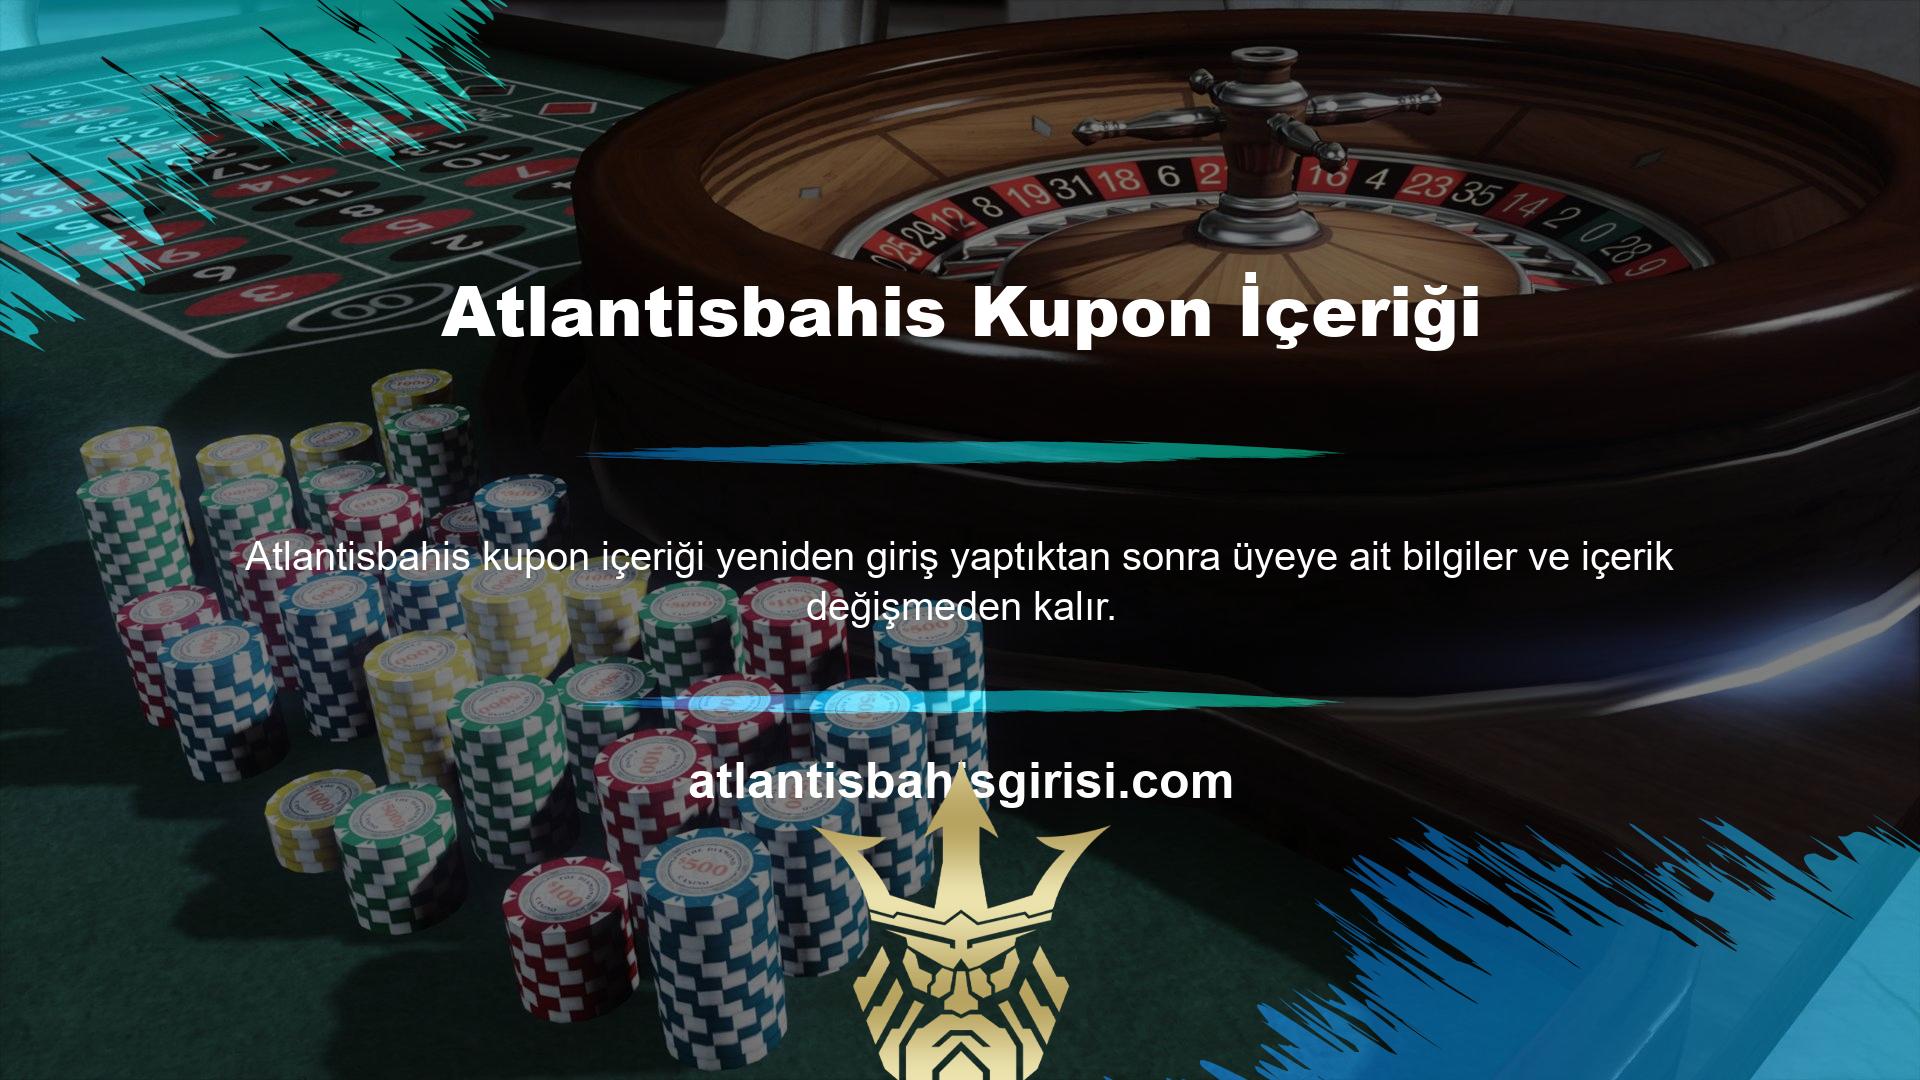 Atlantisbahis kupon içeriğindeki açık bahis, web sitesini oyun için kullanırsanız kapatıldığı için değişmeden kalacaktır